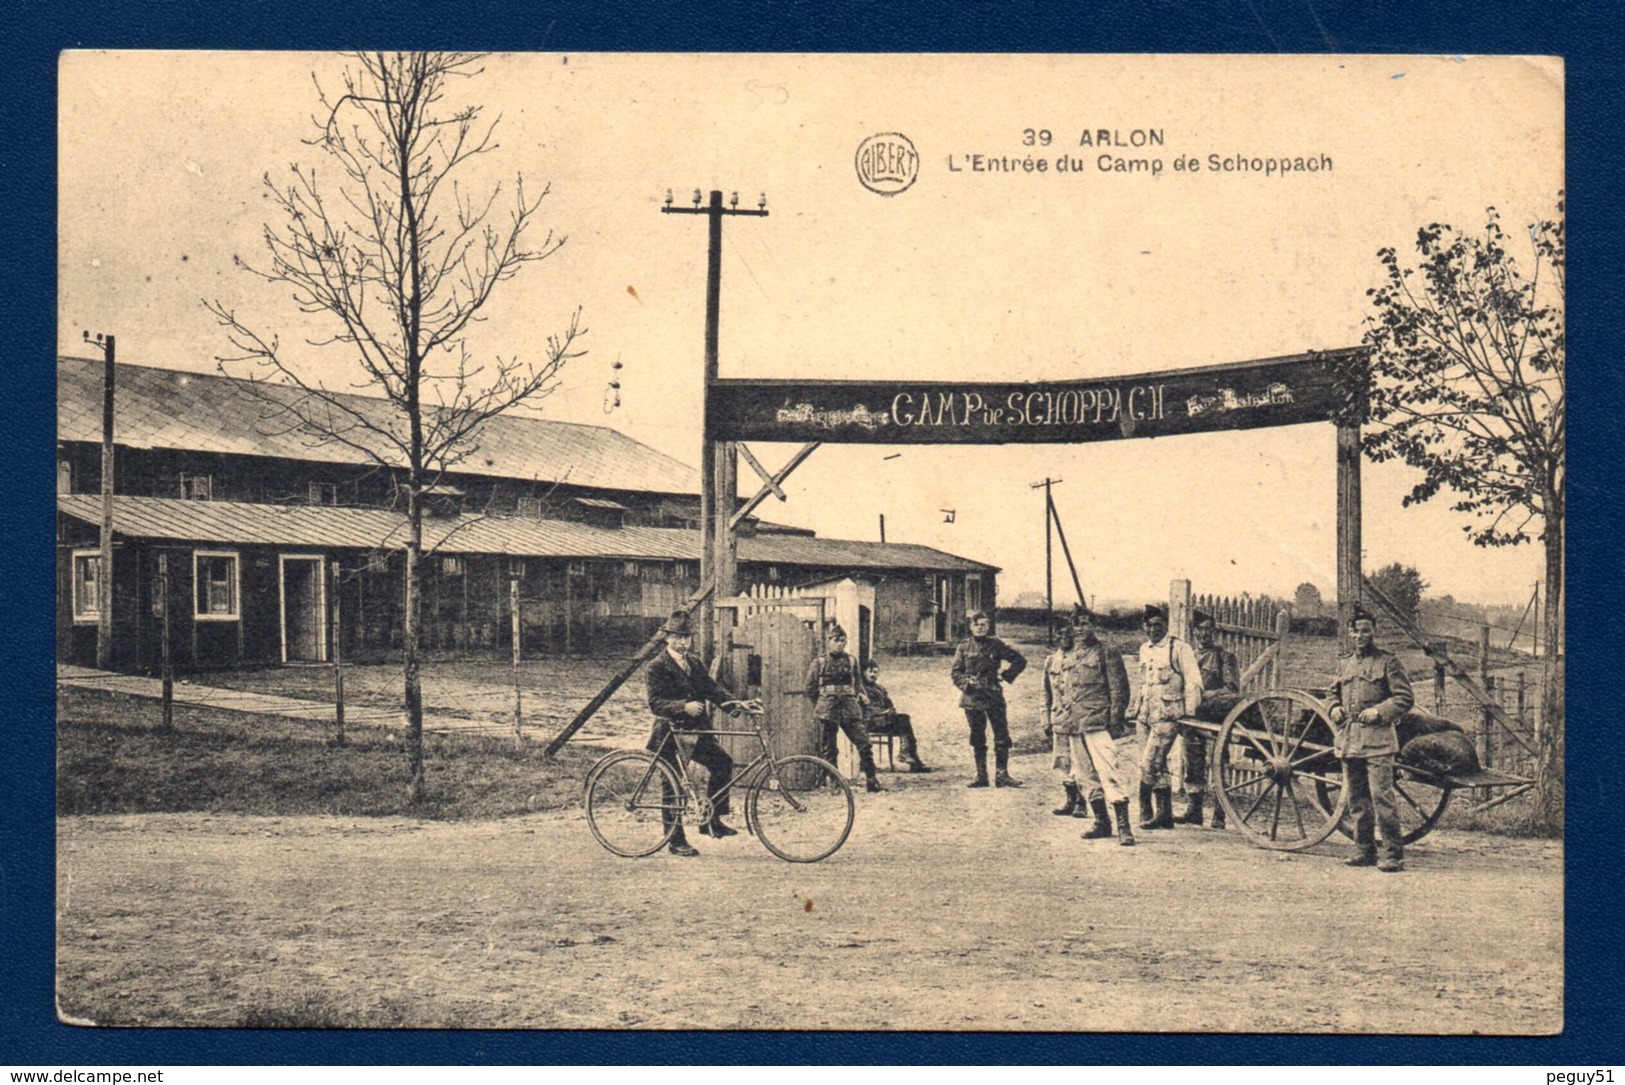 Arlon. Entrée Du Camp De Schoppach. Soldats Et Civil à Vélo.1923 - Arlon